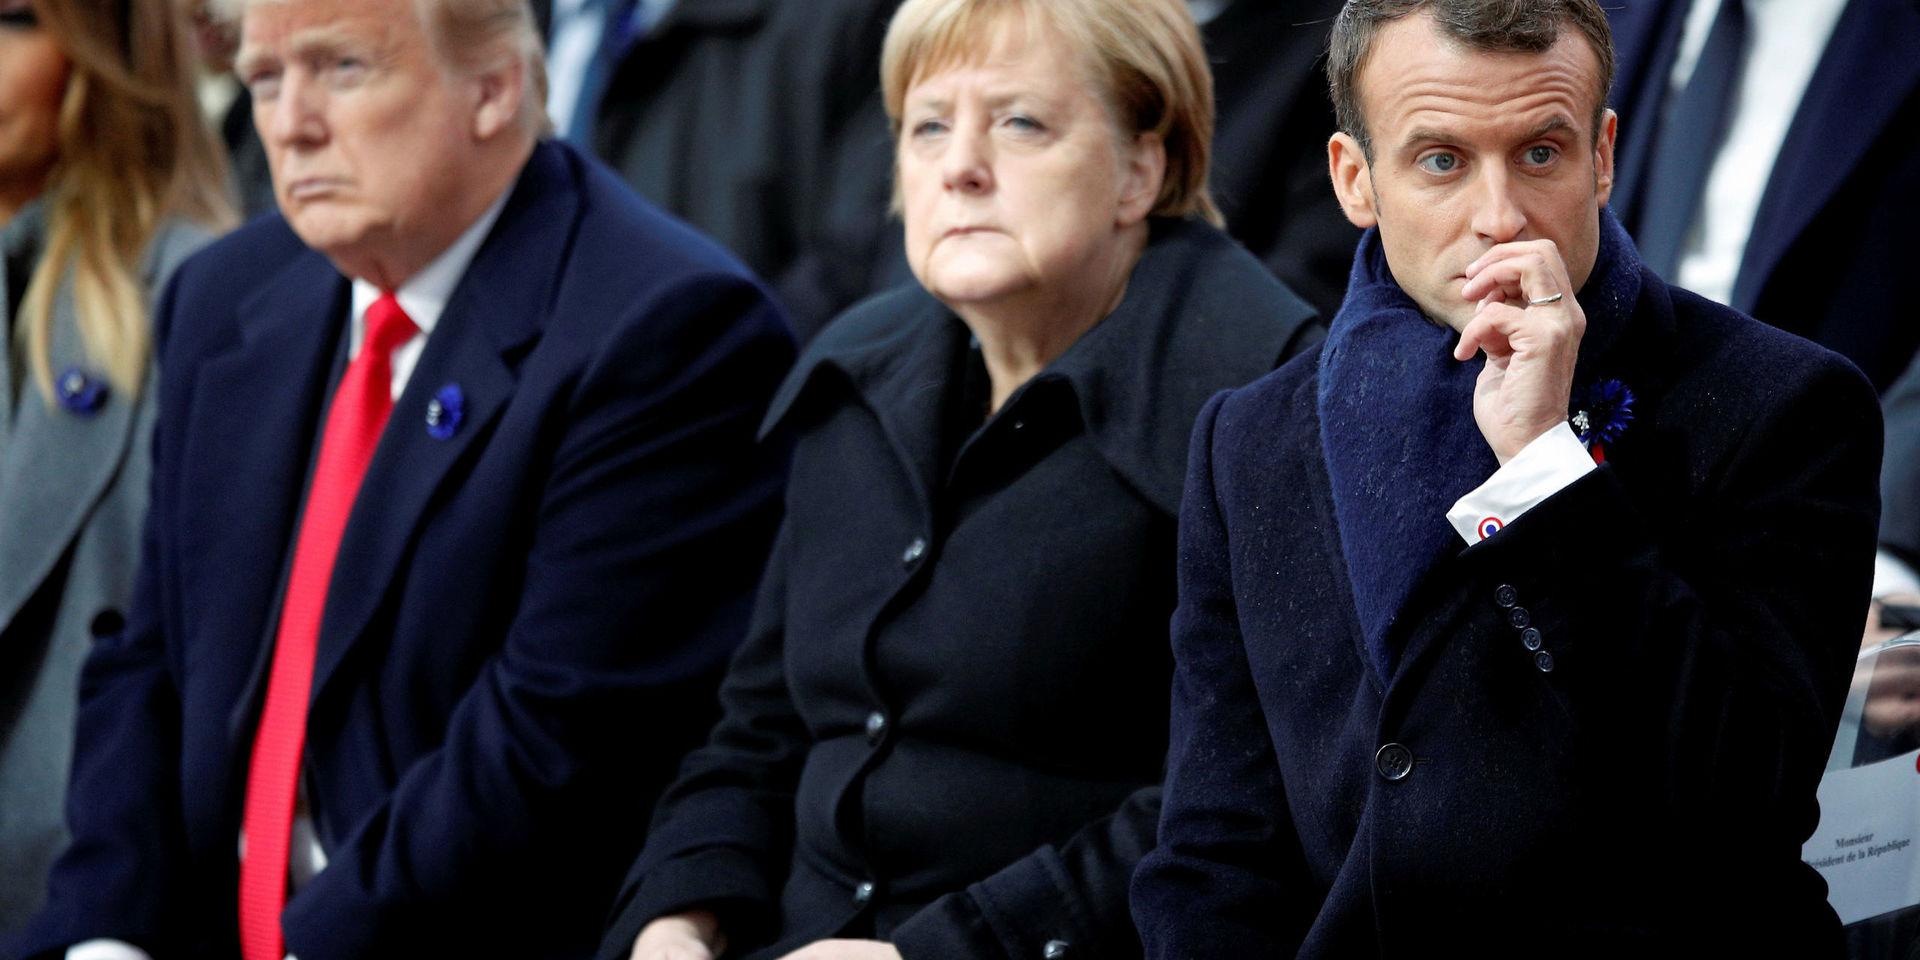 Ett försvarssamarbete försvåras av motsättningar och brexit i ett splittrat Europa. Donald Trump gillar inte Emmanuel Macrons förslag som dock får stöd av Angela Merkel.